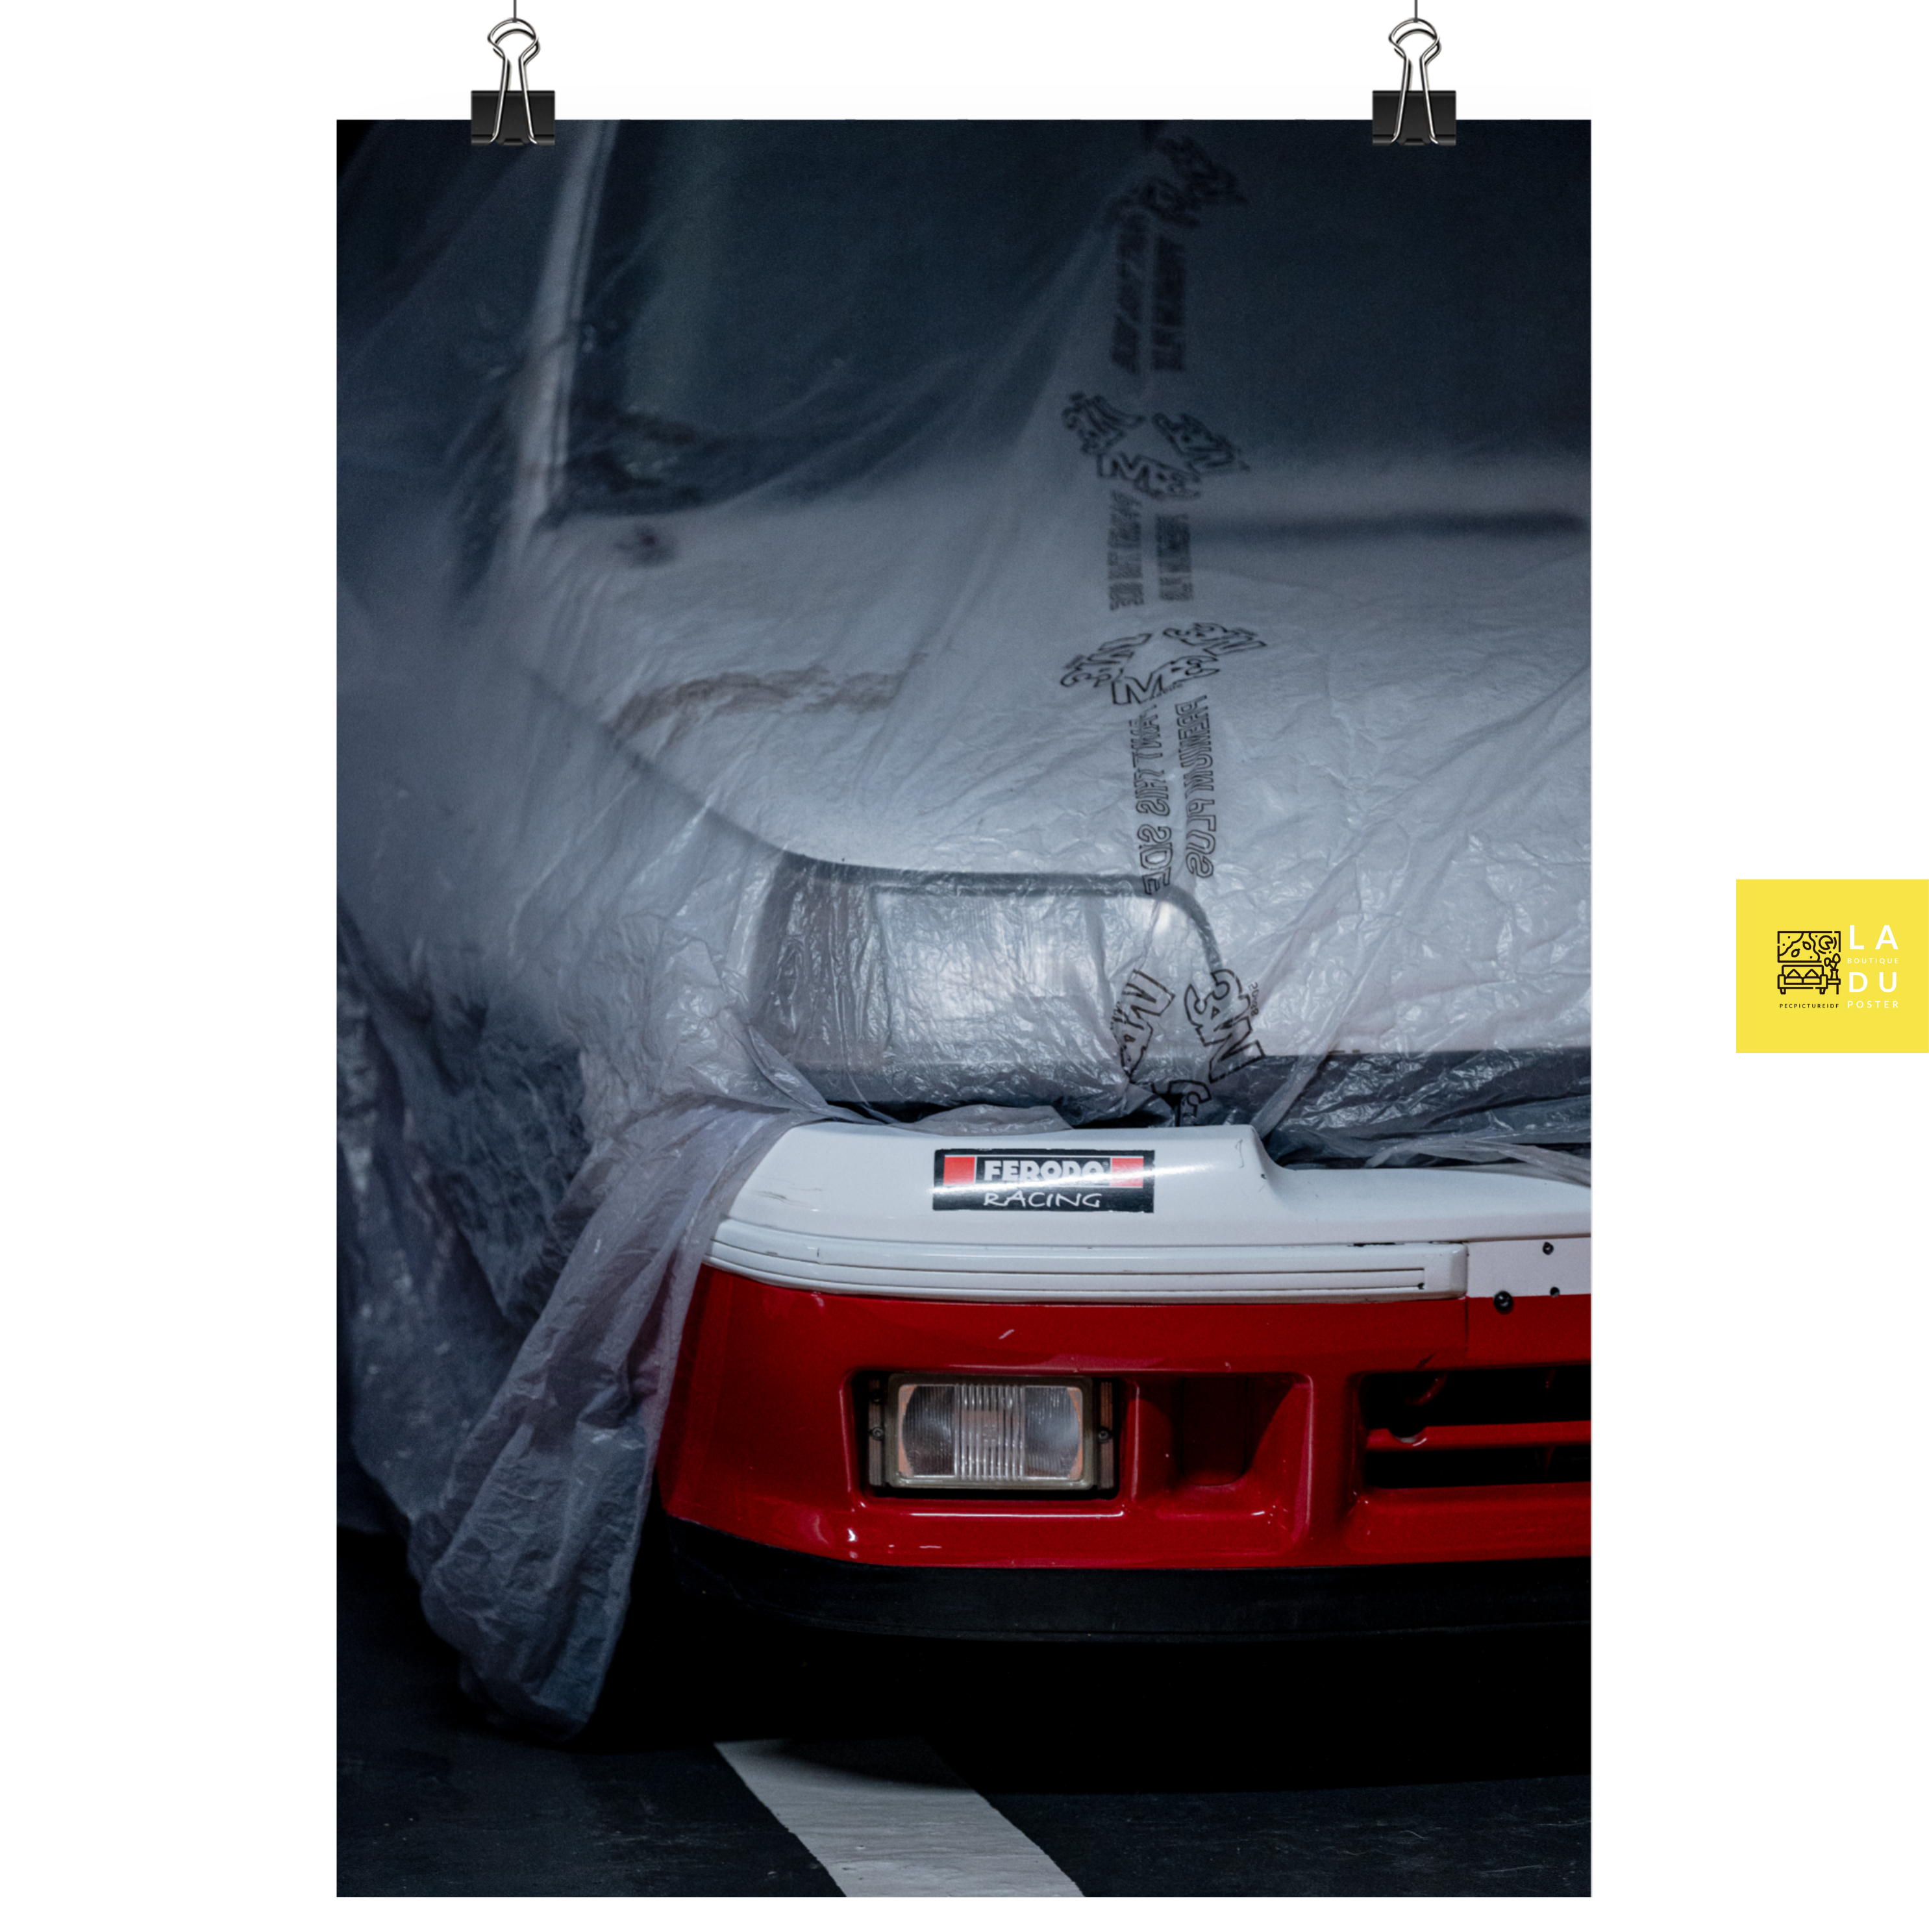 Clio 1 rallye - Poster - La boutique du poster Français